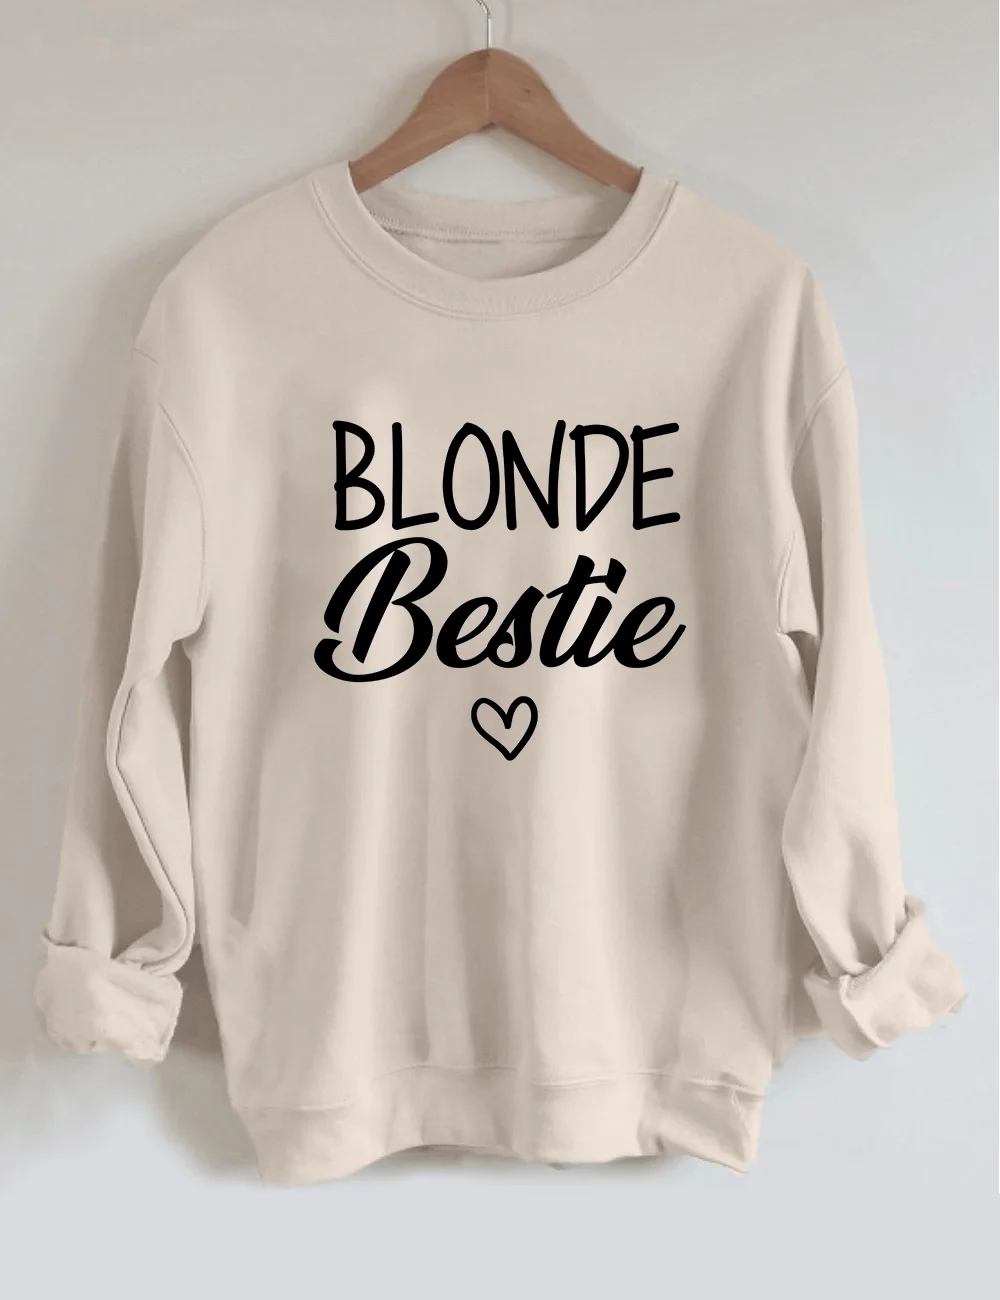 Blonde Brunette Bestie Matching Sweatshirt